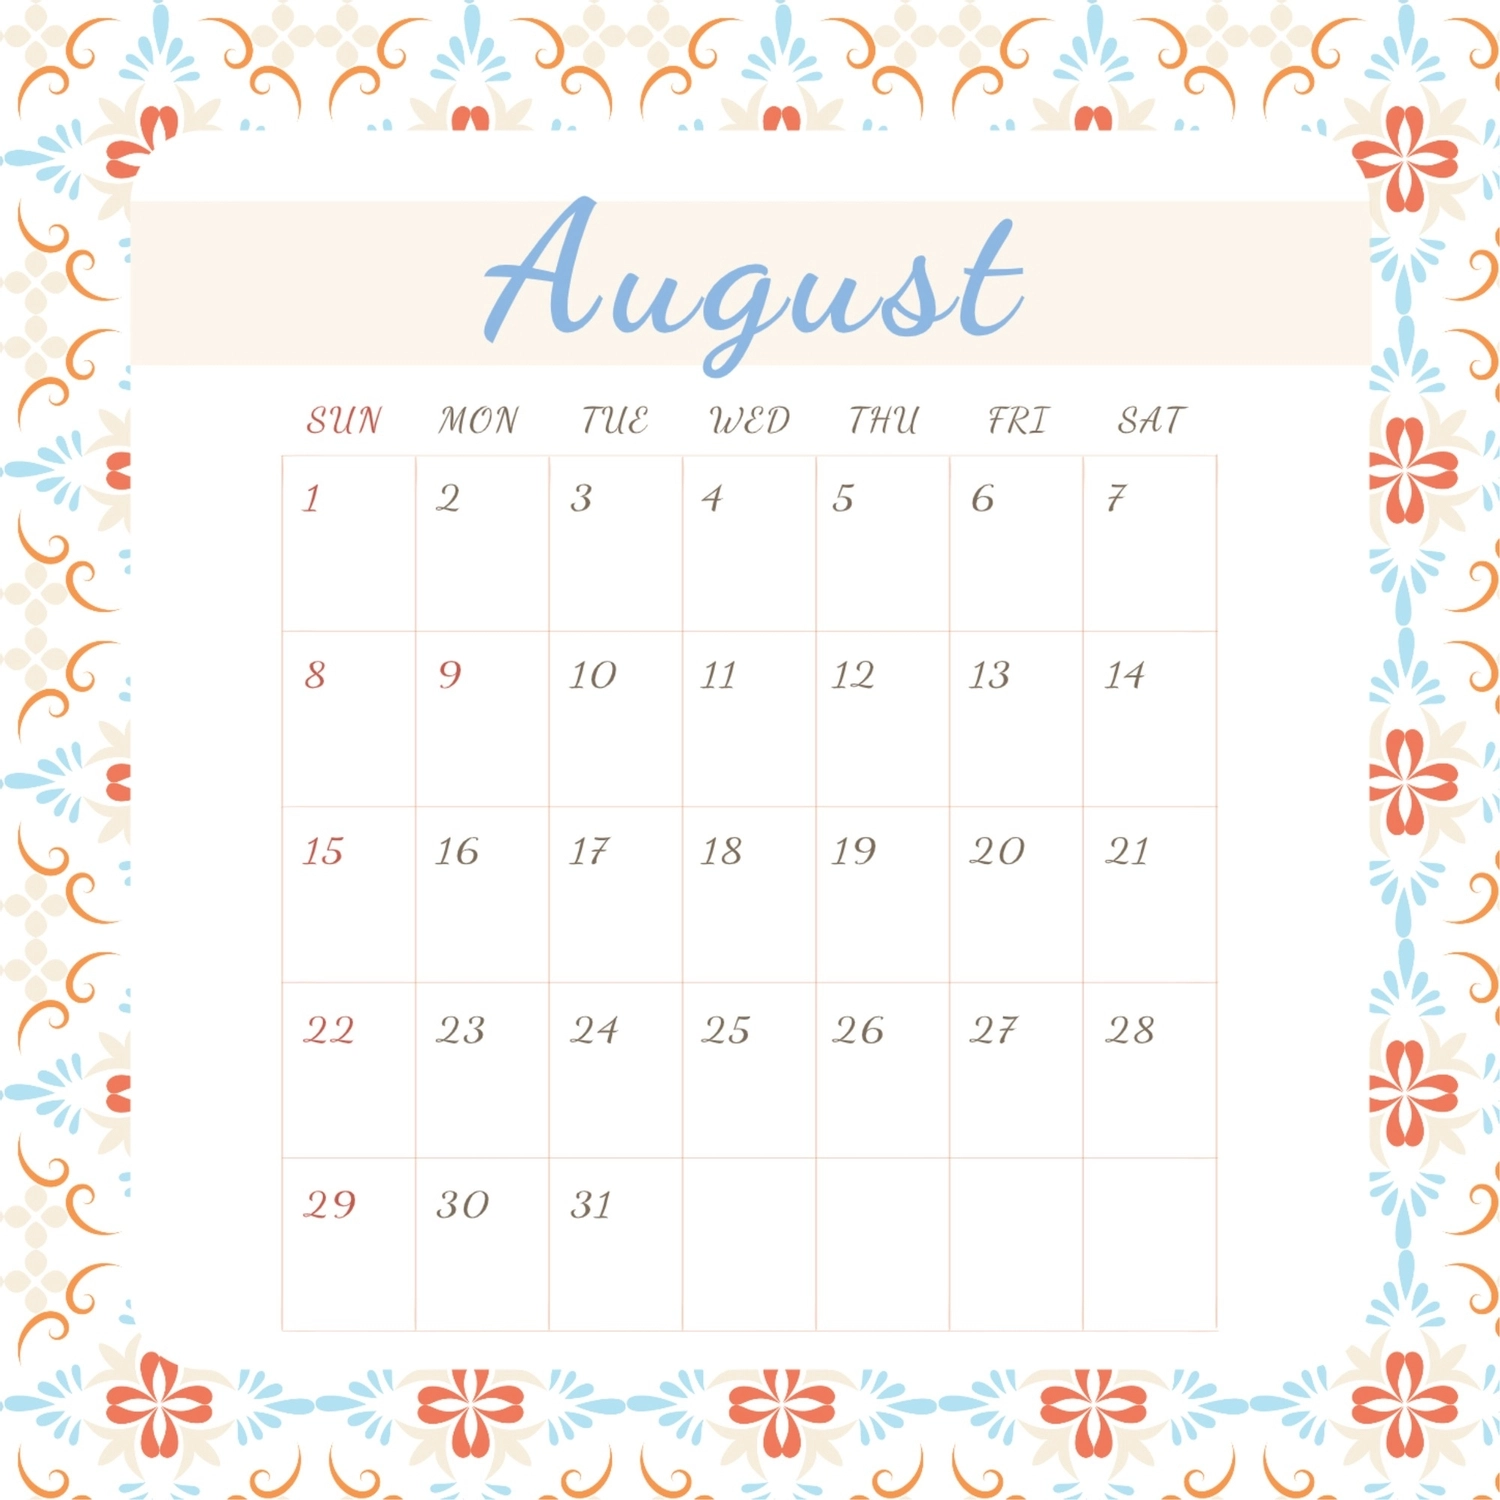 8月カレンダー, 週, 作成, デザイン, カレンダーテンプレート